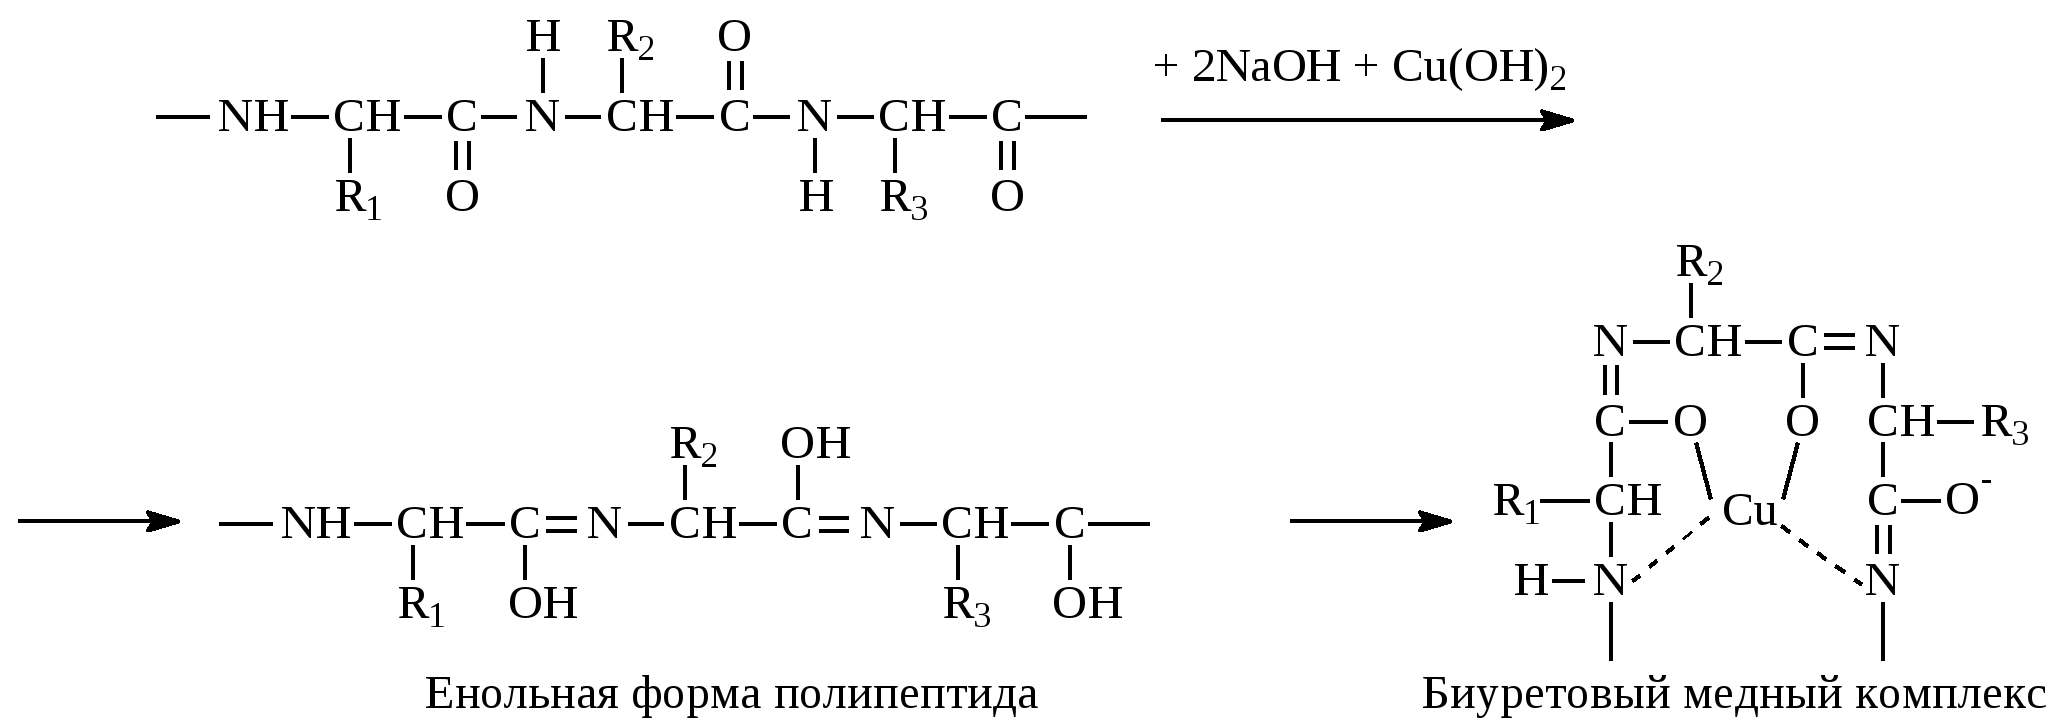 Полипептиды с азотной кислотой. Формы полипептидов. Енольная форма. Реакция глицина с формальдегидом. Глицин и формальдегид.